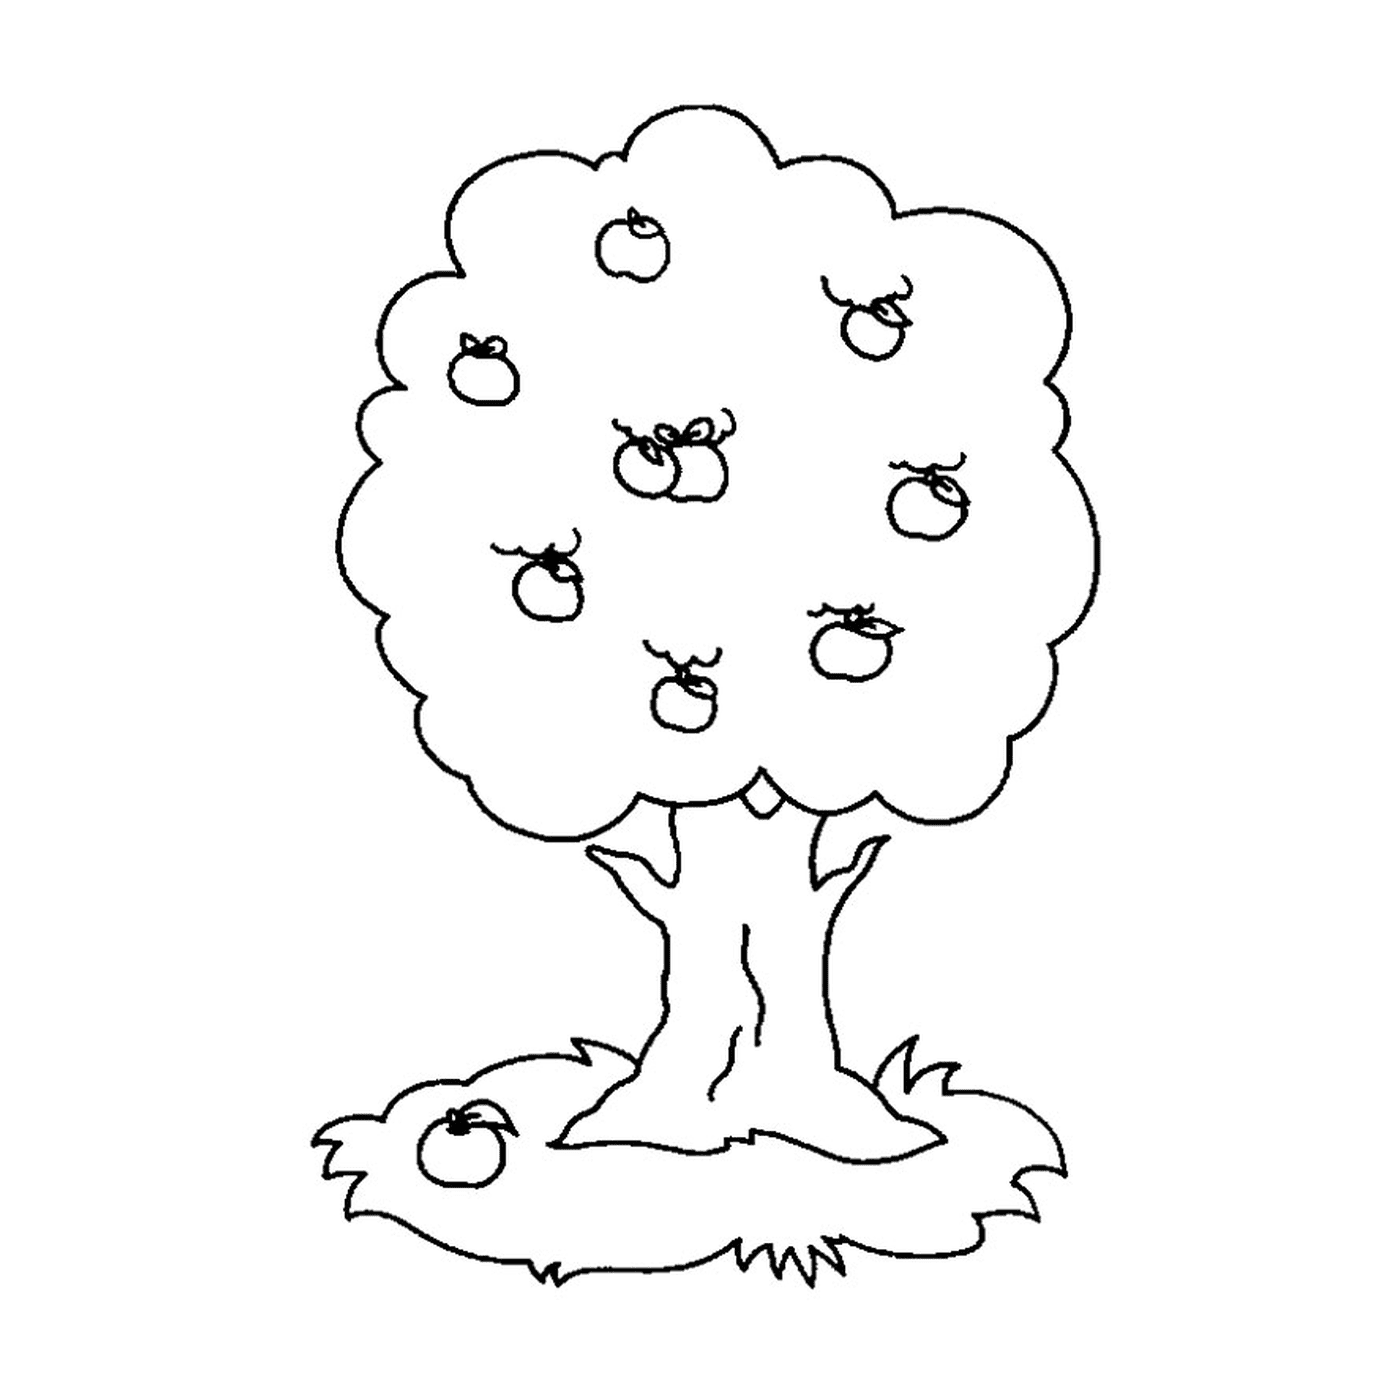  Ein Baum mit Äpfeln, die darauf wachsen 